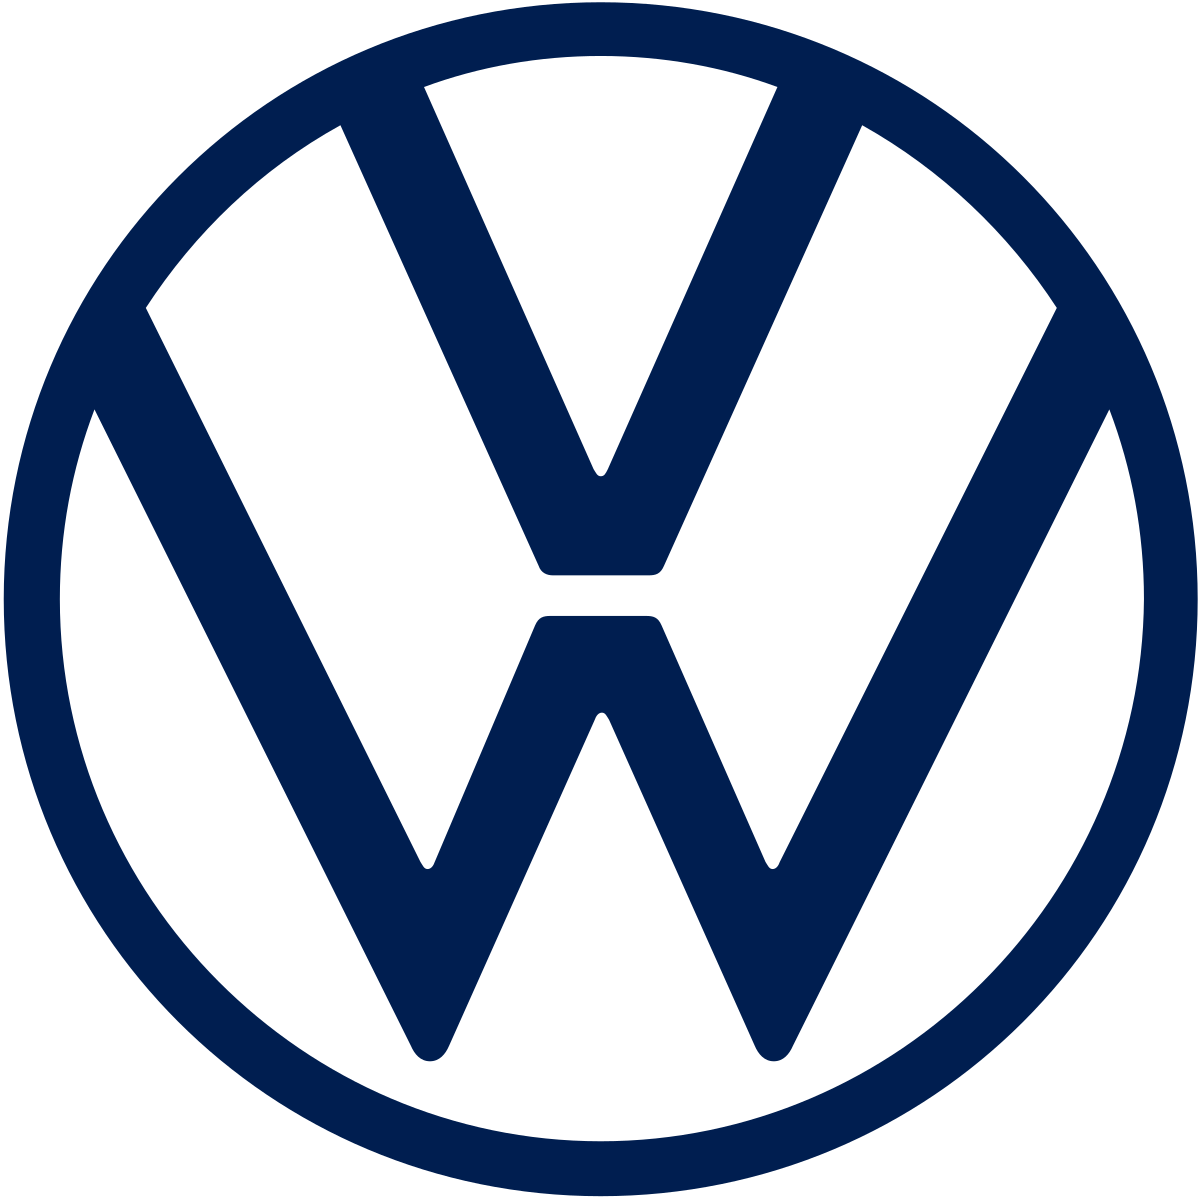 Volkswagen - Wikipedia